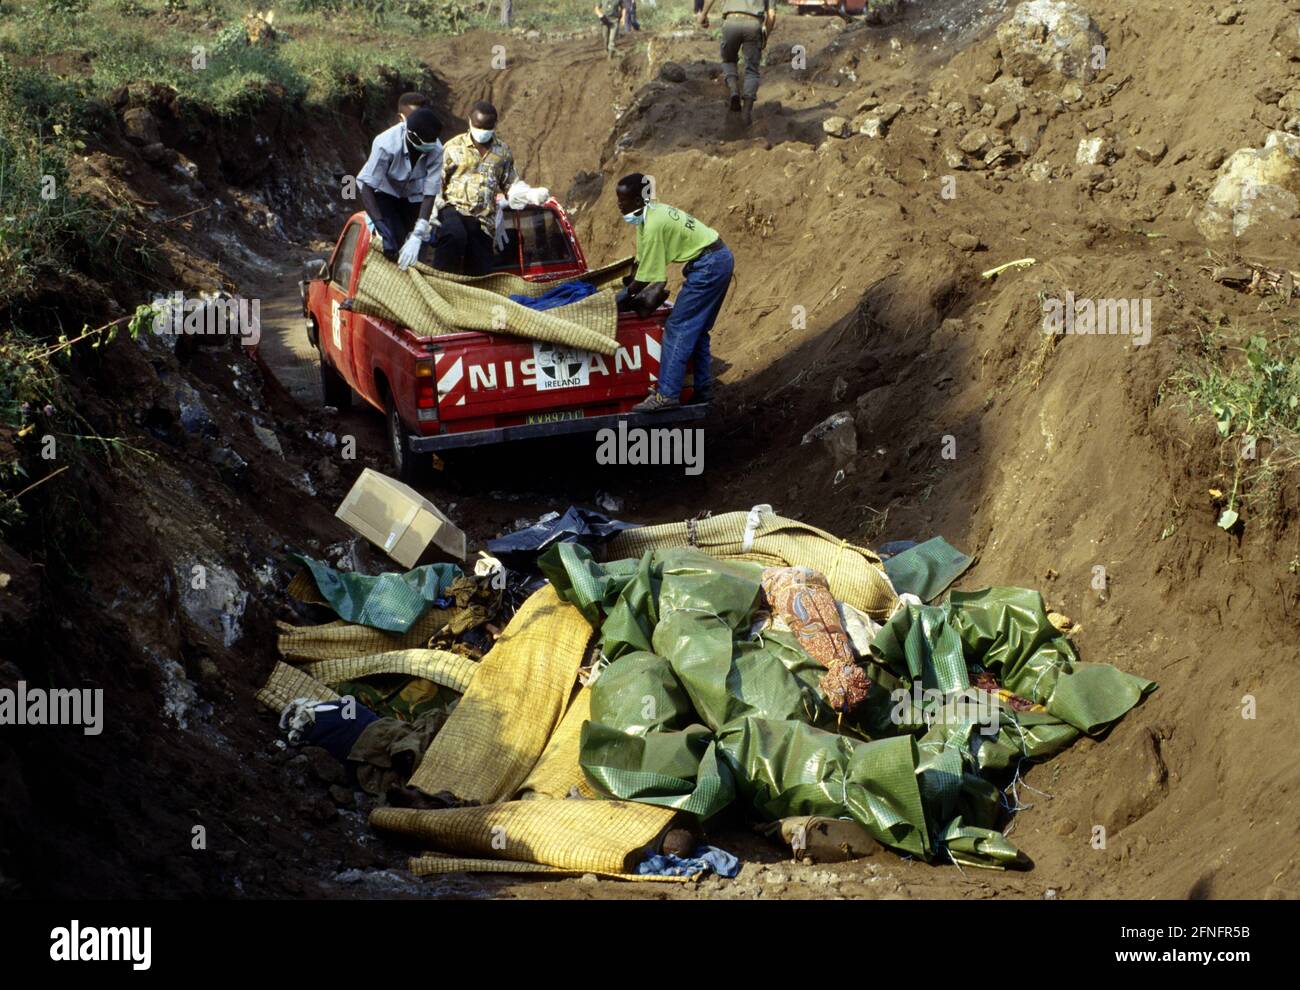 ZAIRE : rifugiati ruandesi in un campo vicino a Goma : coloro che sono  morti di colera sono stati scaricati in un pozzo di cadavere , luglio 1994 [ traduzione automatizzata] Foto stock - Alamy